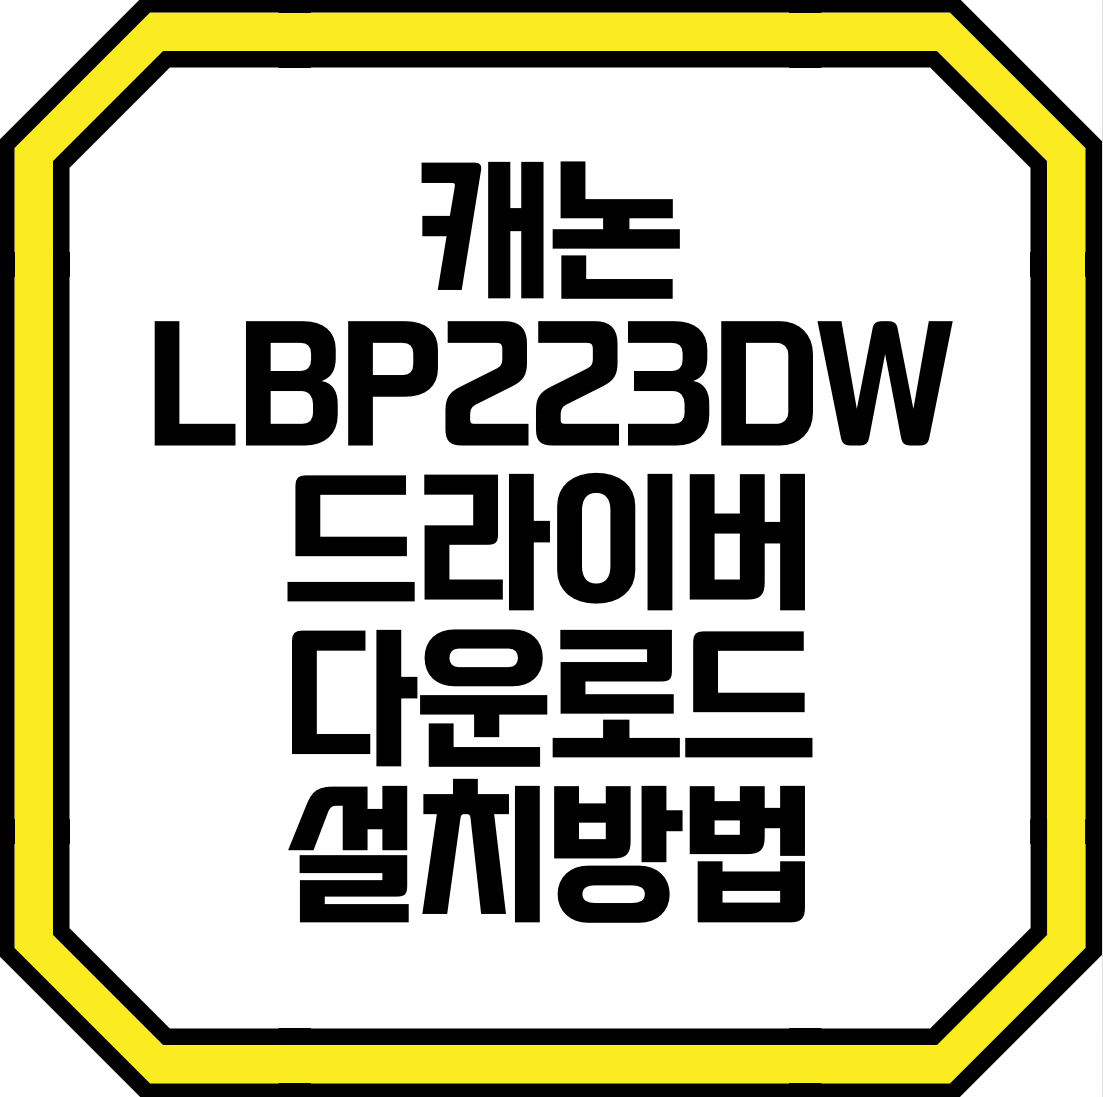 캐논 LBP223DW 드라이버를 다운로드하고 설치방법과 프린터 연결방법 그리고 주요기능까지 알아보겠습니다.